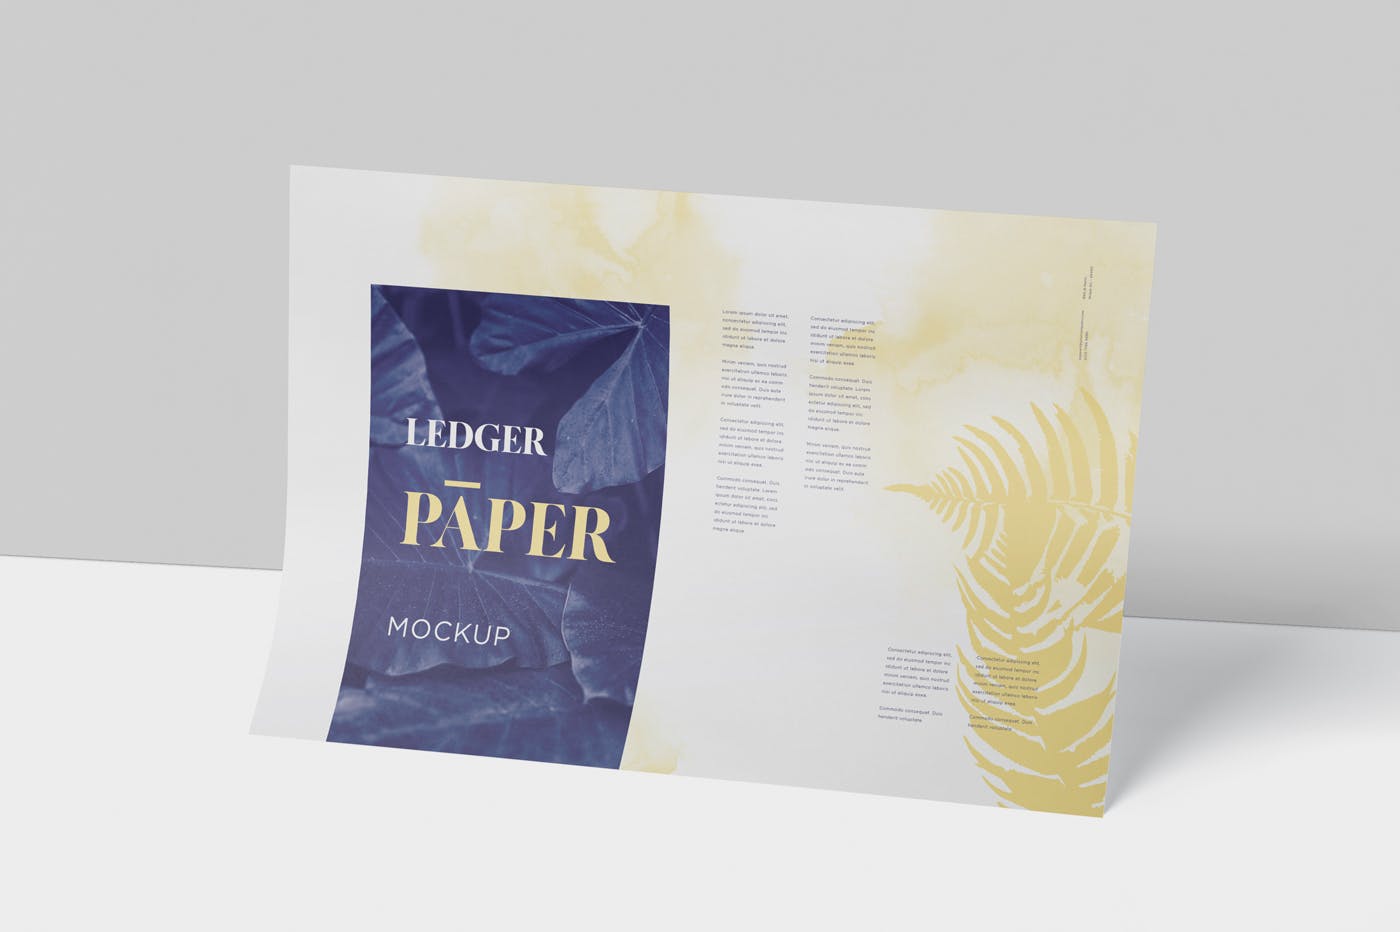 印刷品设计效果图样机蚂蚁素材精选模板 Ledger Paper Mockup – 17×11 Inch Size插图(3)